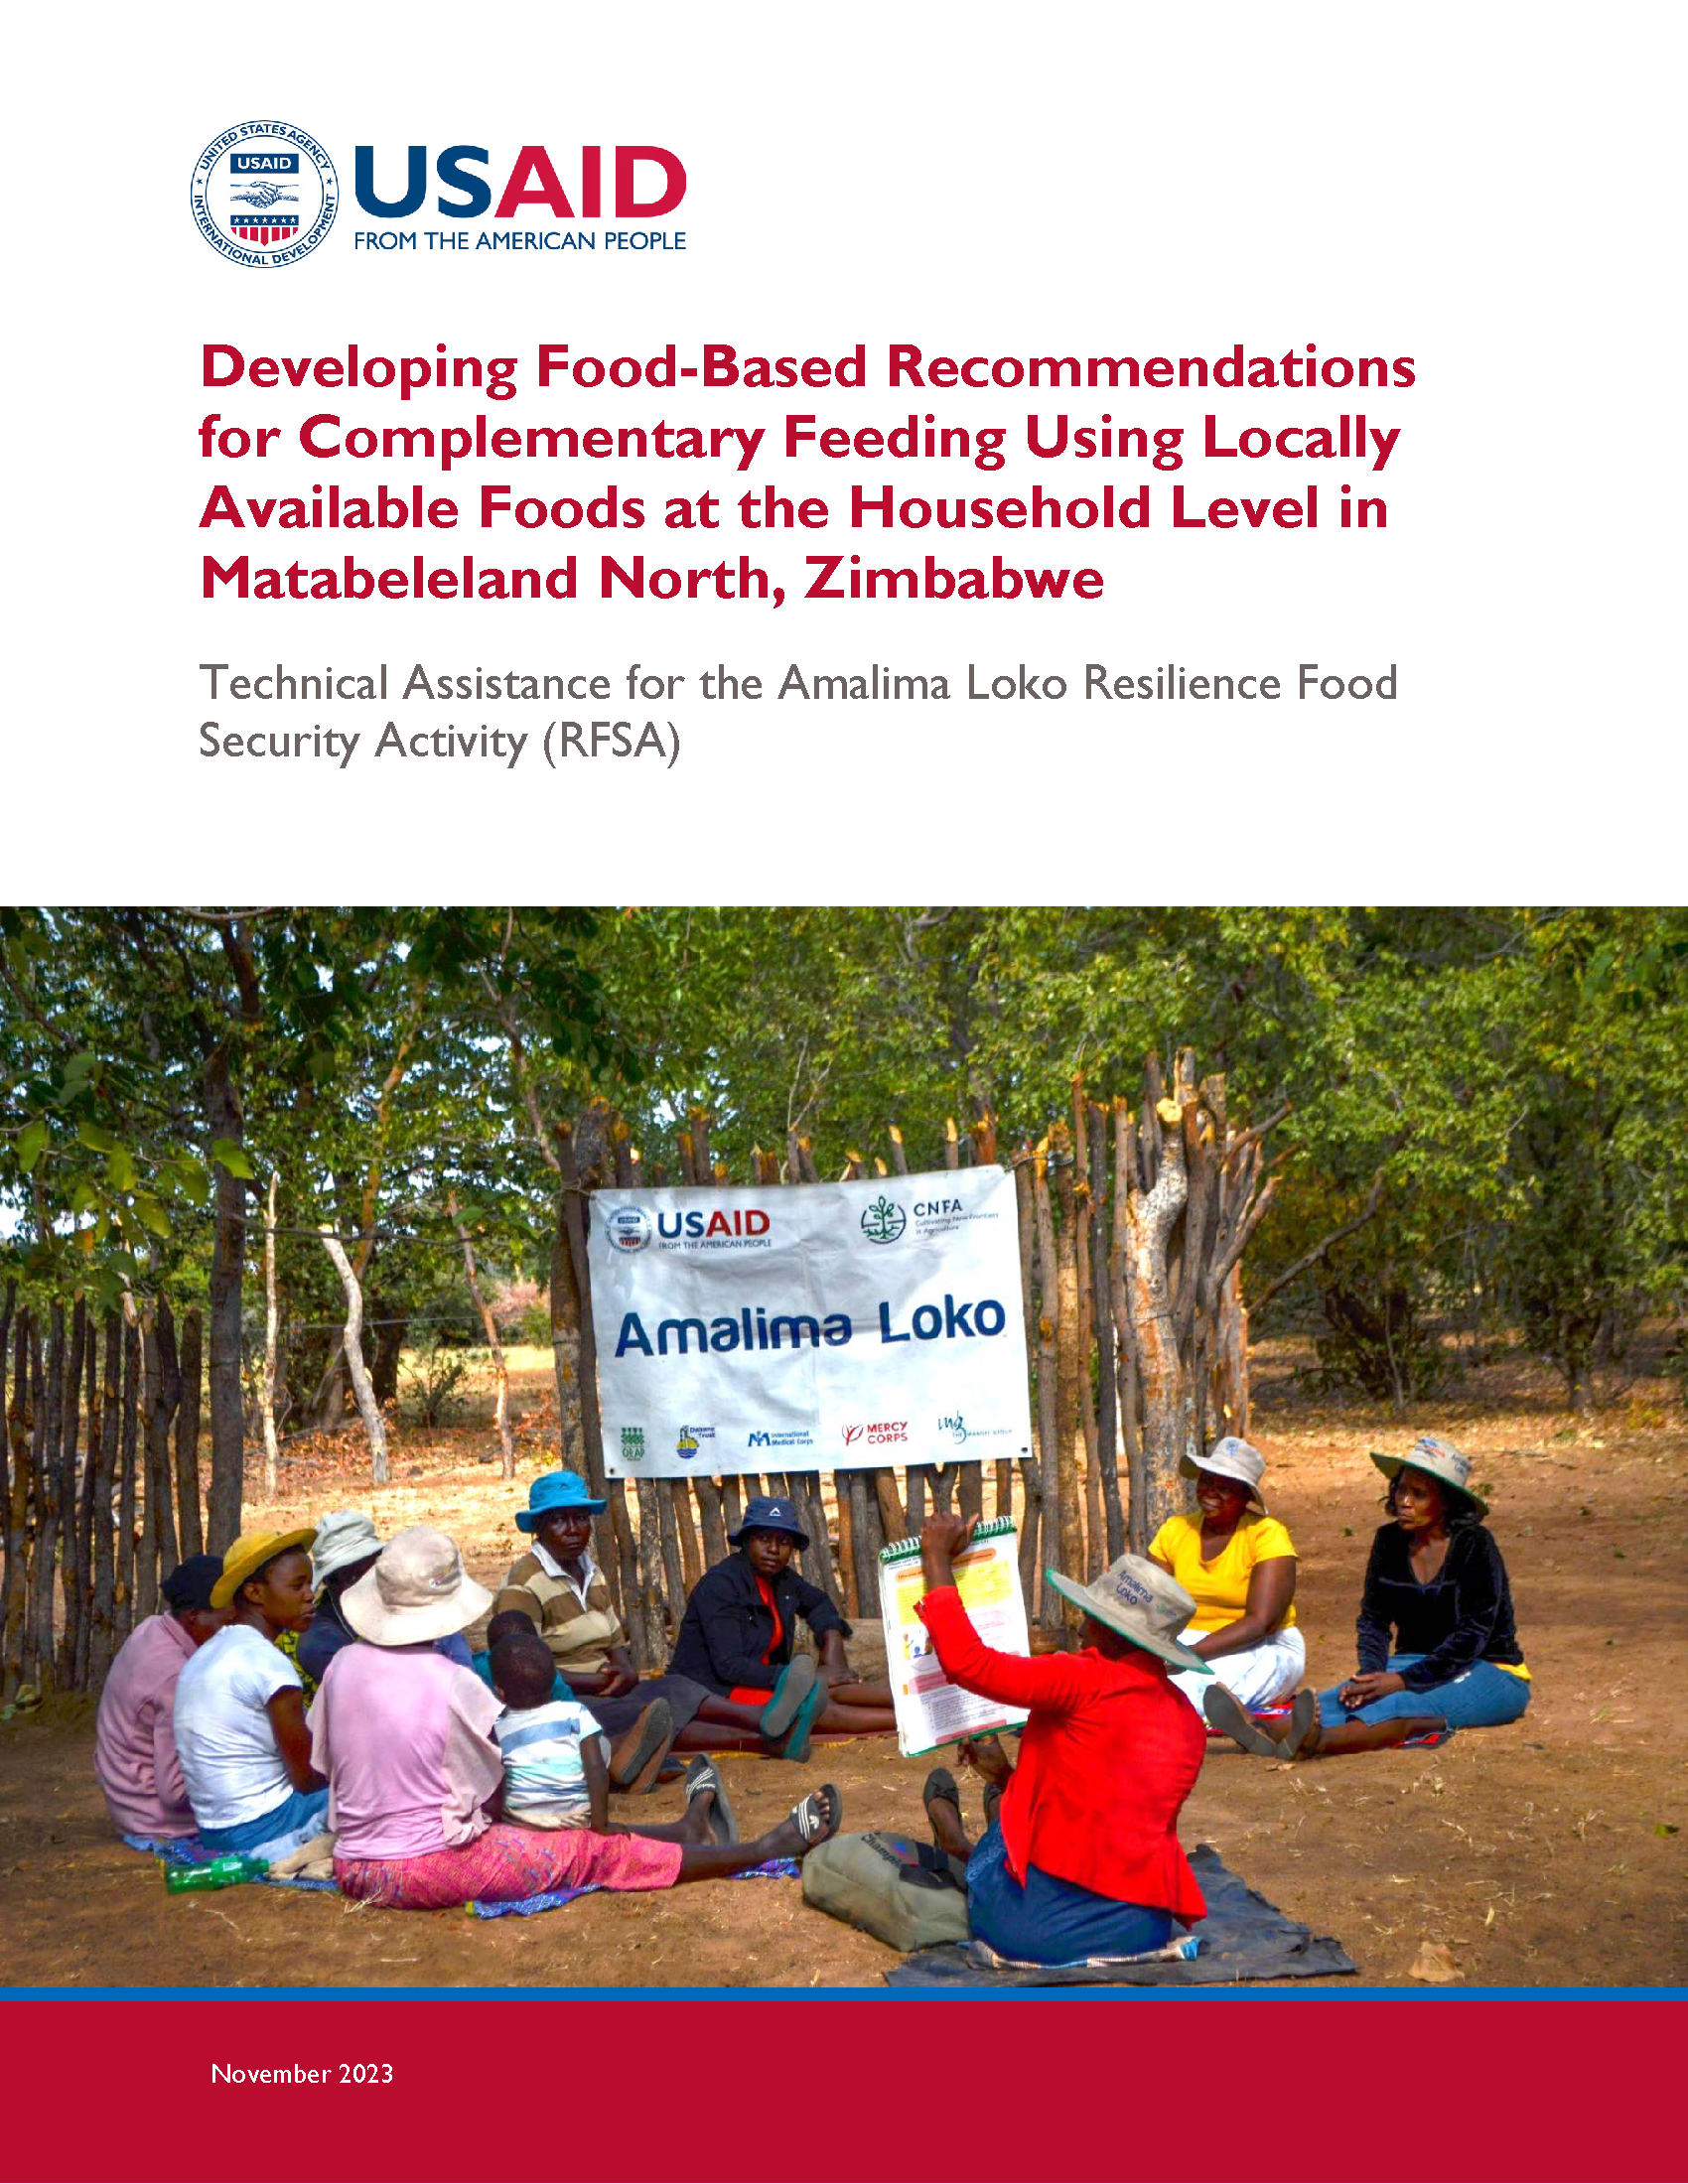 Page de couverture pour l'élaboration de recommandations basées sur l'alimentation pour une alimentation complémentaire utilisant des aliments disponibles localement au niveau des ménages dans le Matabeleland Nord, Zimbabwe